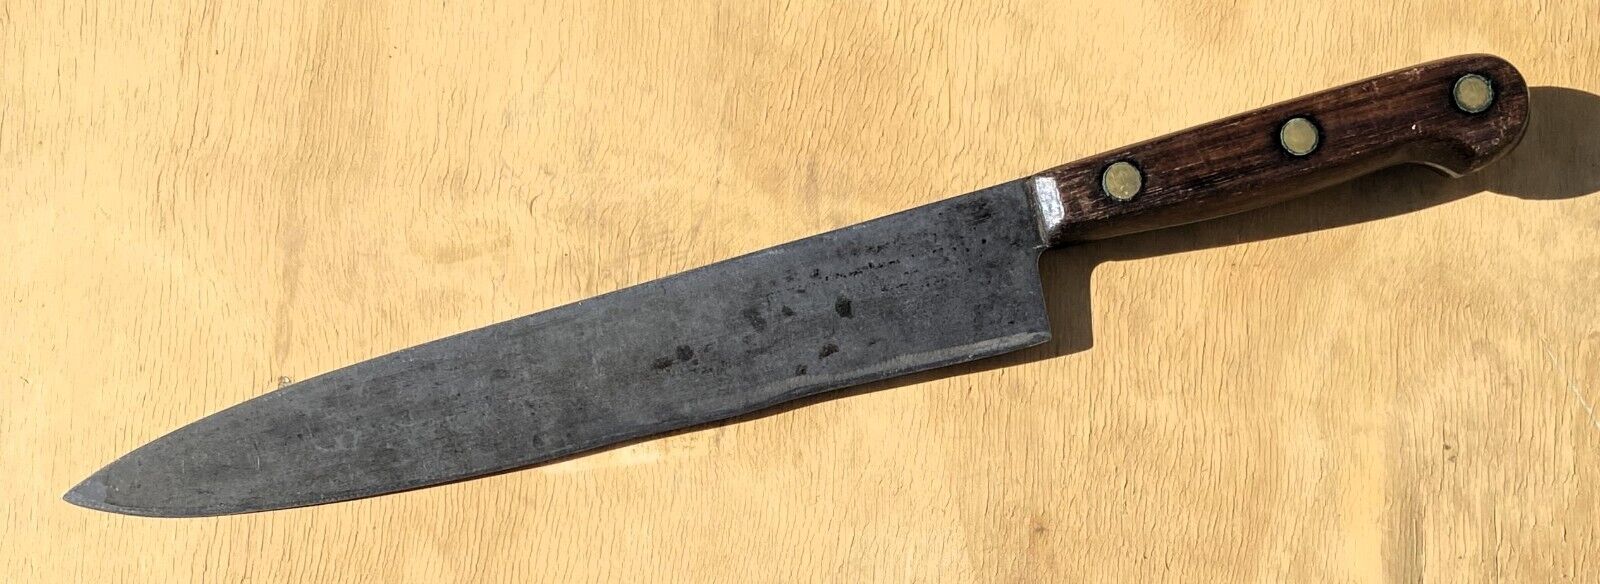 Large Old Vintage Chef Cooking Kitchen Food Slicing Slicer Knife